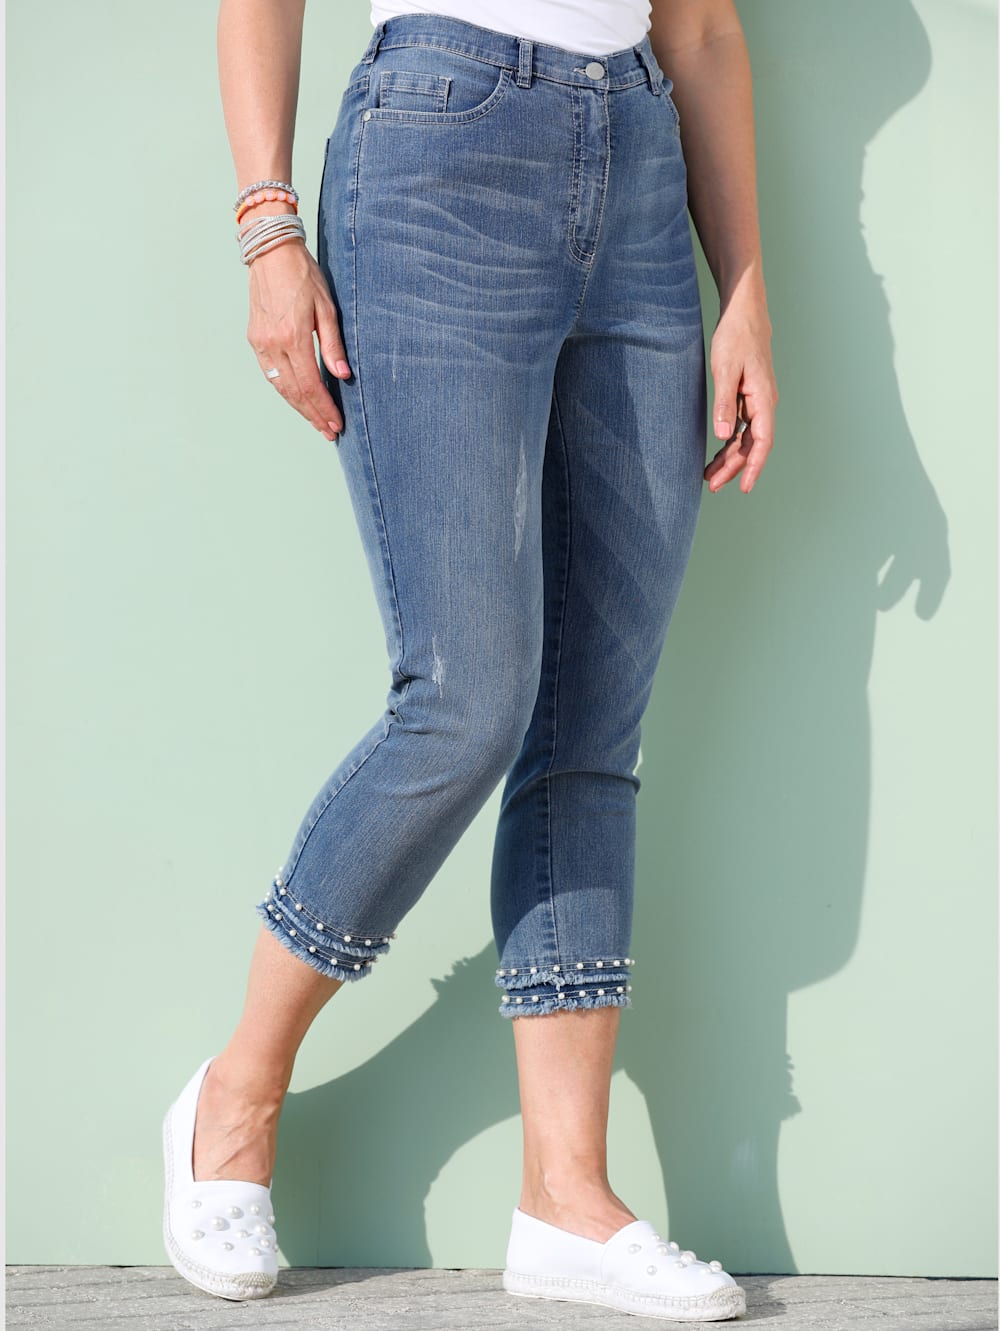 Miamoda 7 8 Jeans Mit Dekoperlen Und Kleinen Fransen Am Saum Mia Moda